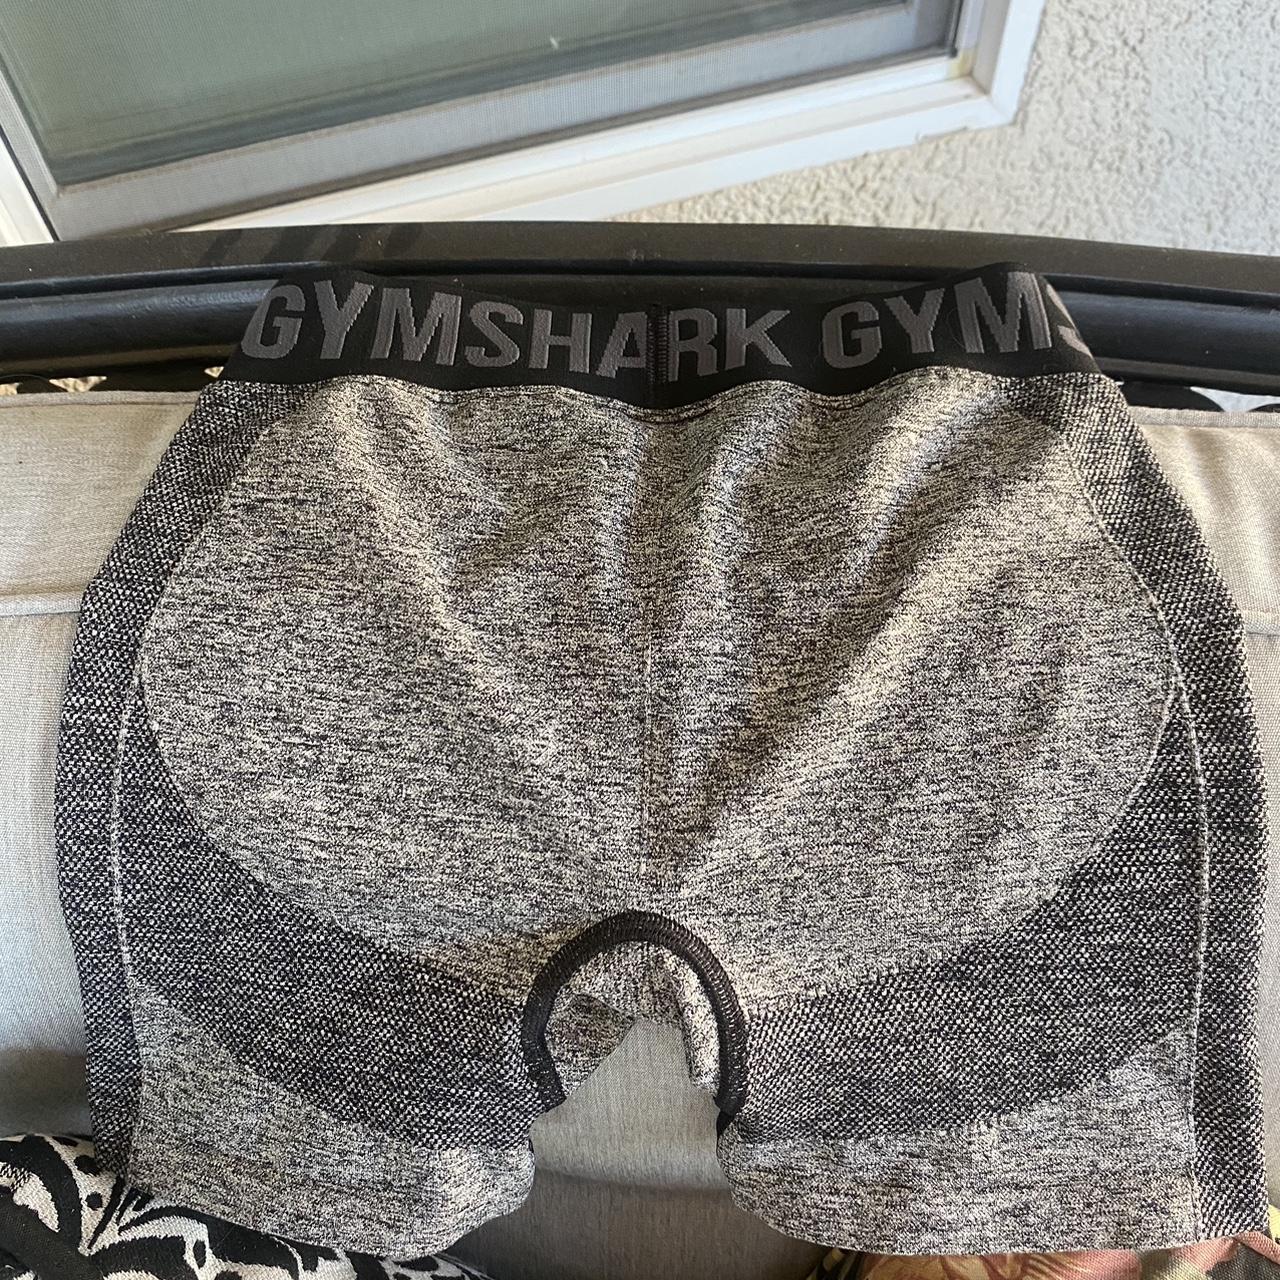 Gymshark camo scrunch shorts ▫️Scrunched legs ▫️Dark - Depop